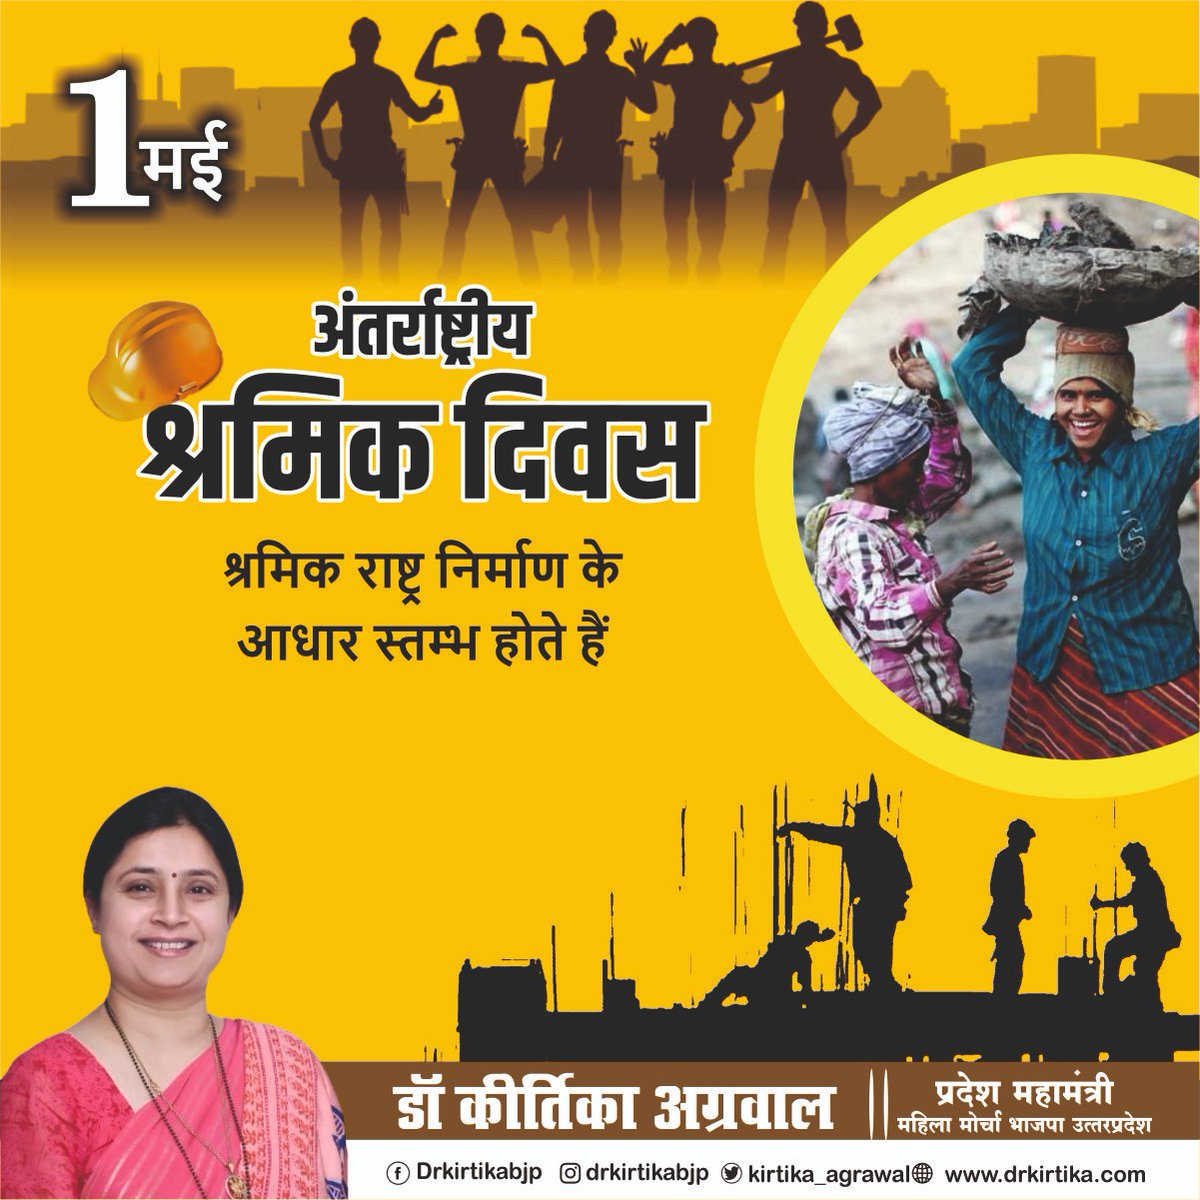 श्रमेव जयते!

विकसित भारत के निर्माण में रत सभी श्रमिक बंधुओं को अंतर्राष्ट्रीय श्रमिक दिवस की हार्दिक शुभकामनाएं!

#WorldLaborDay